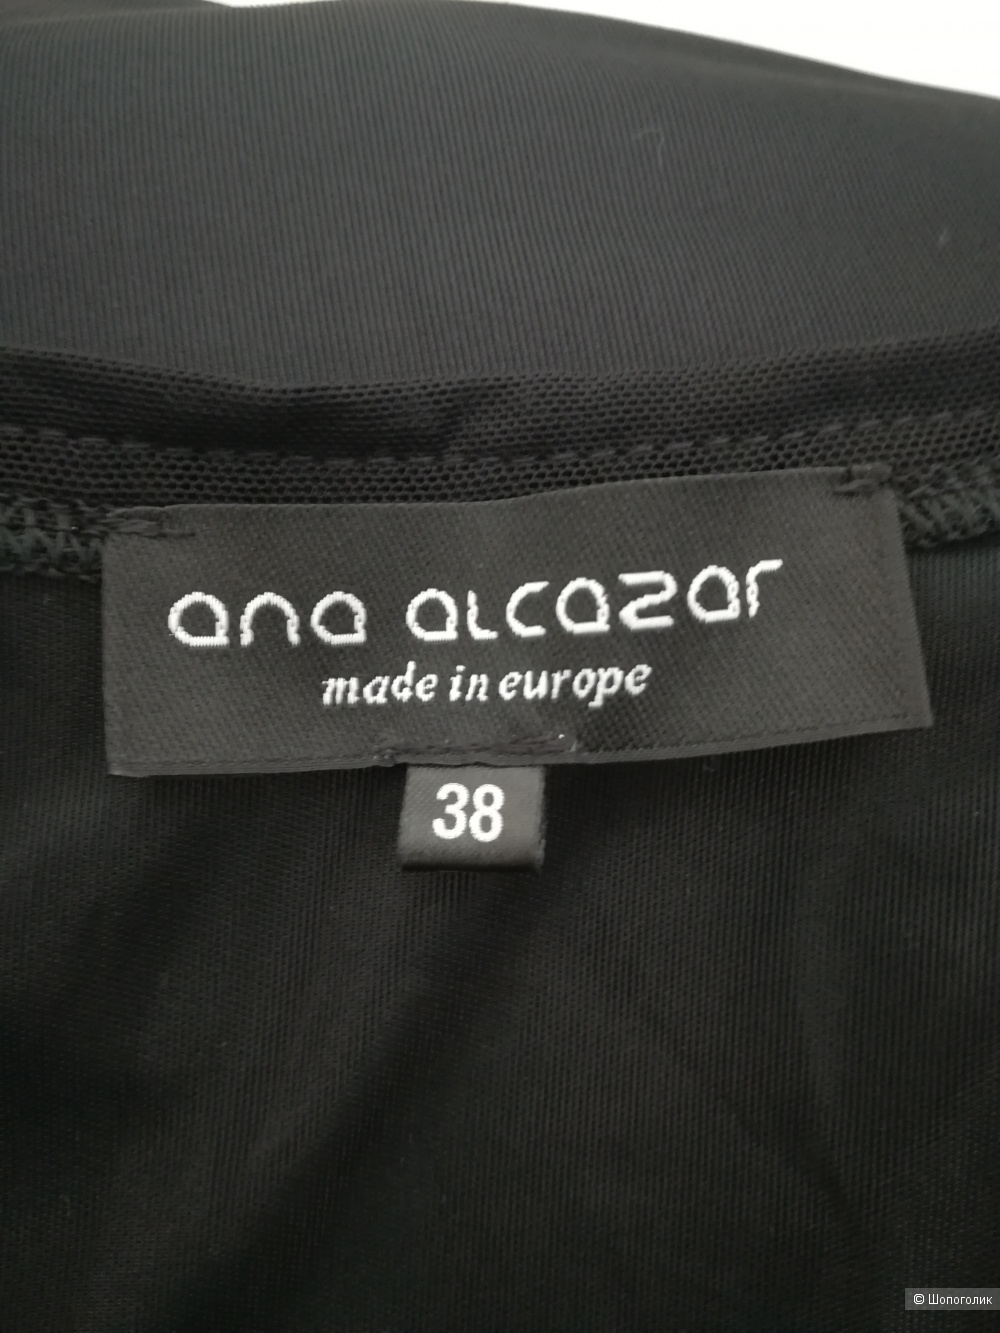 Платье Ana alcazar, 38 eur